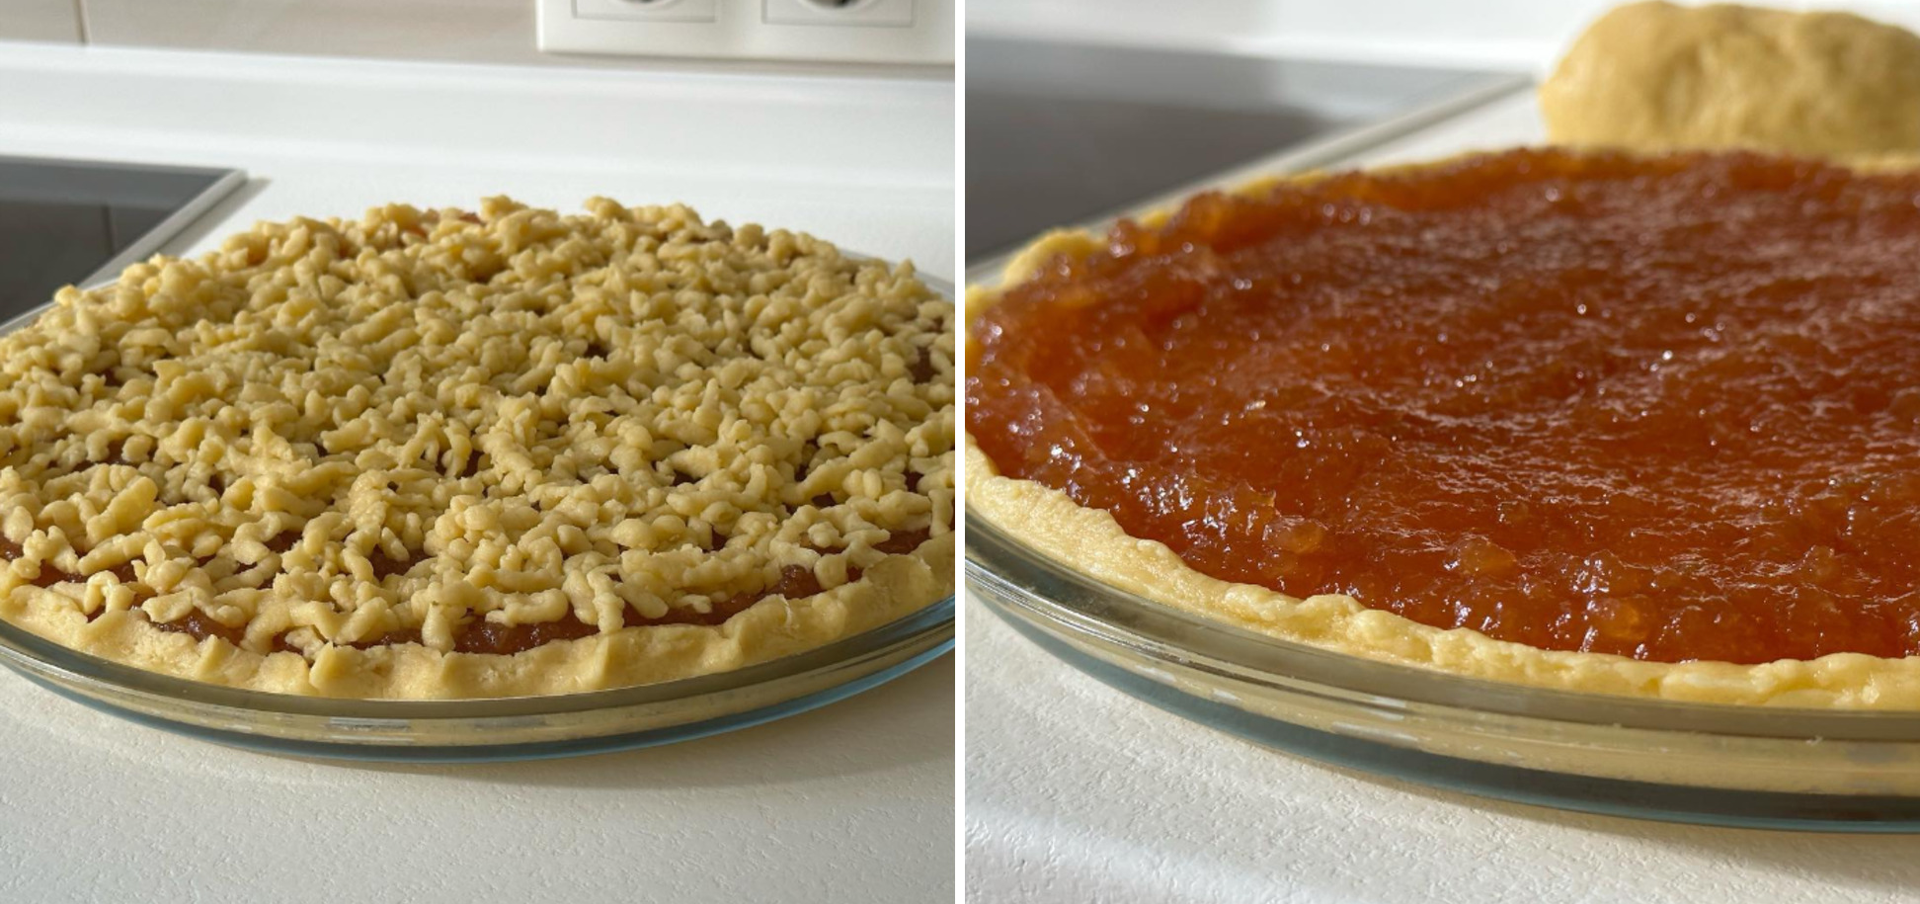 Homemade pie with jam